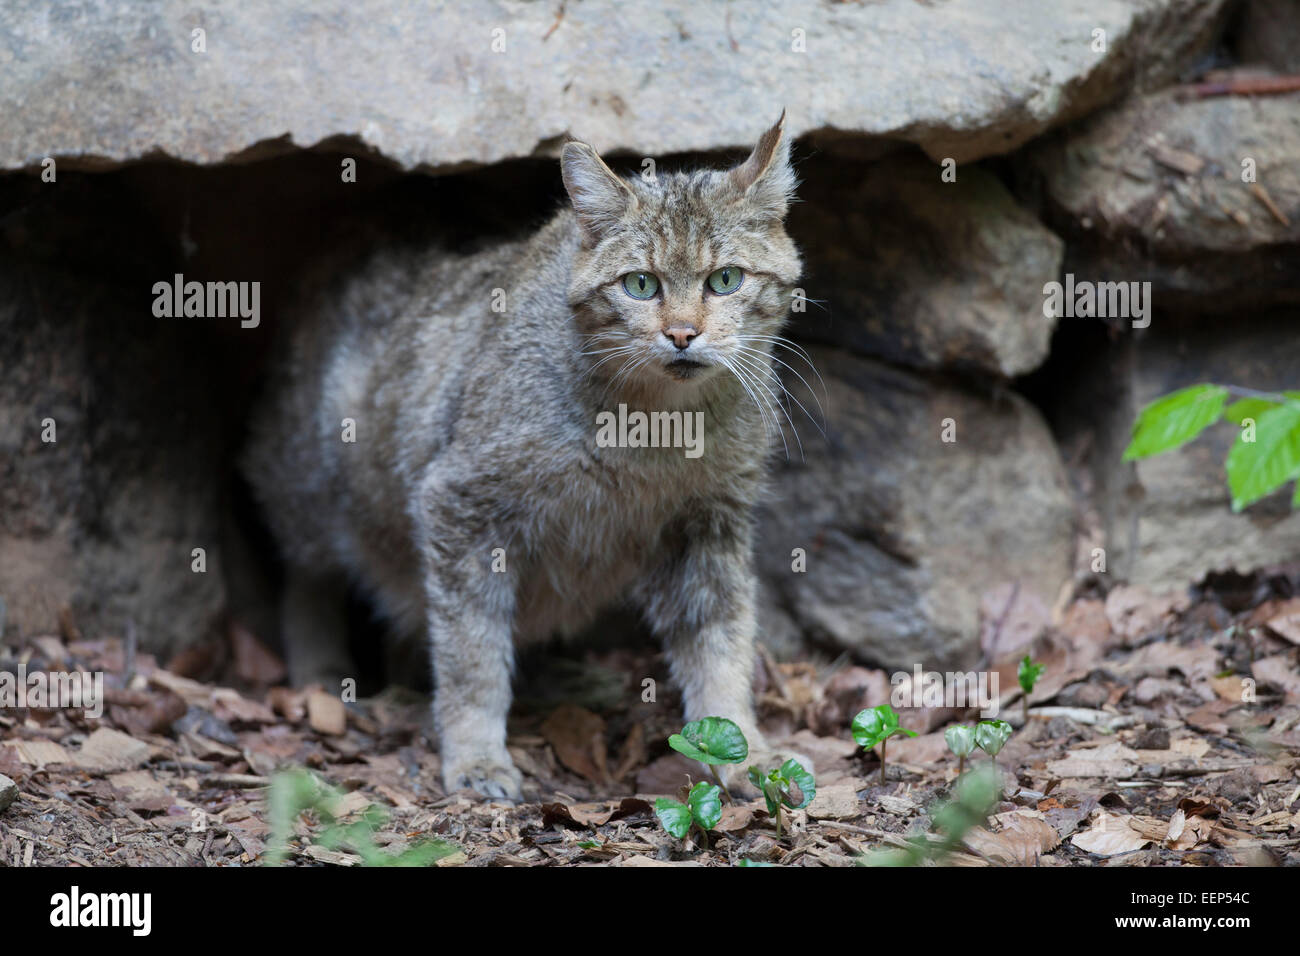 European wildcat [Felis silvestris silvestris], Europäische Wildkatze Stock Photo